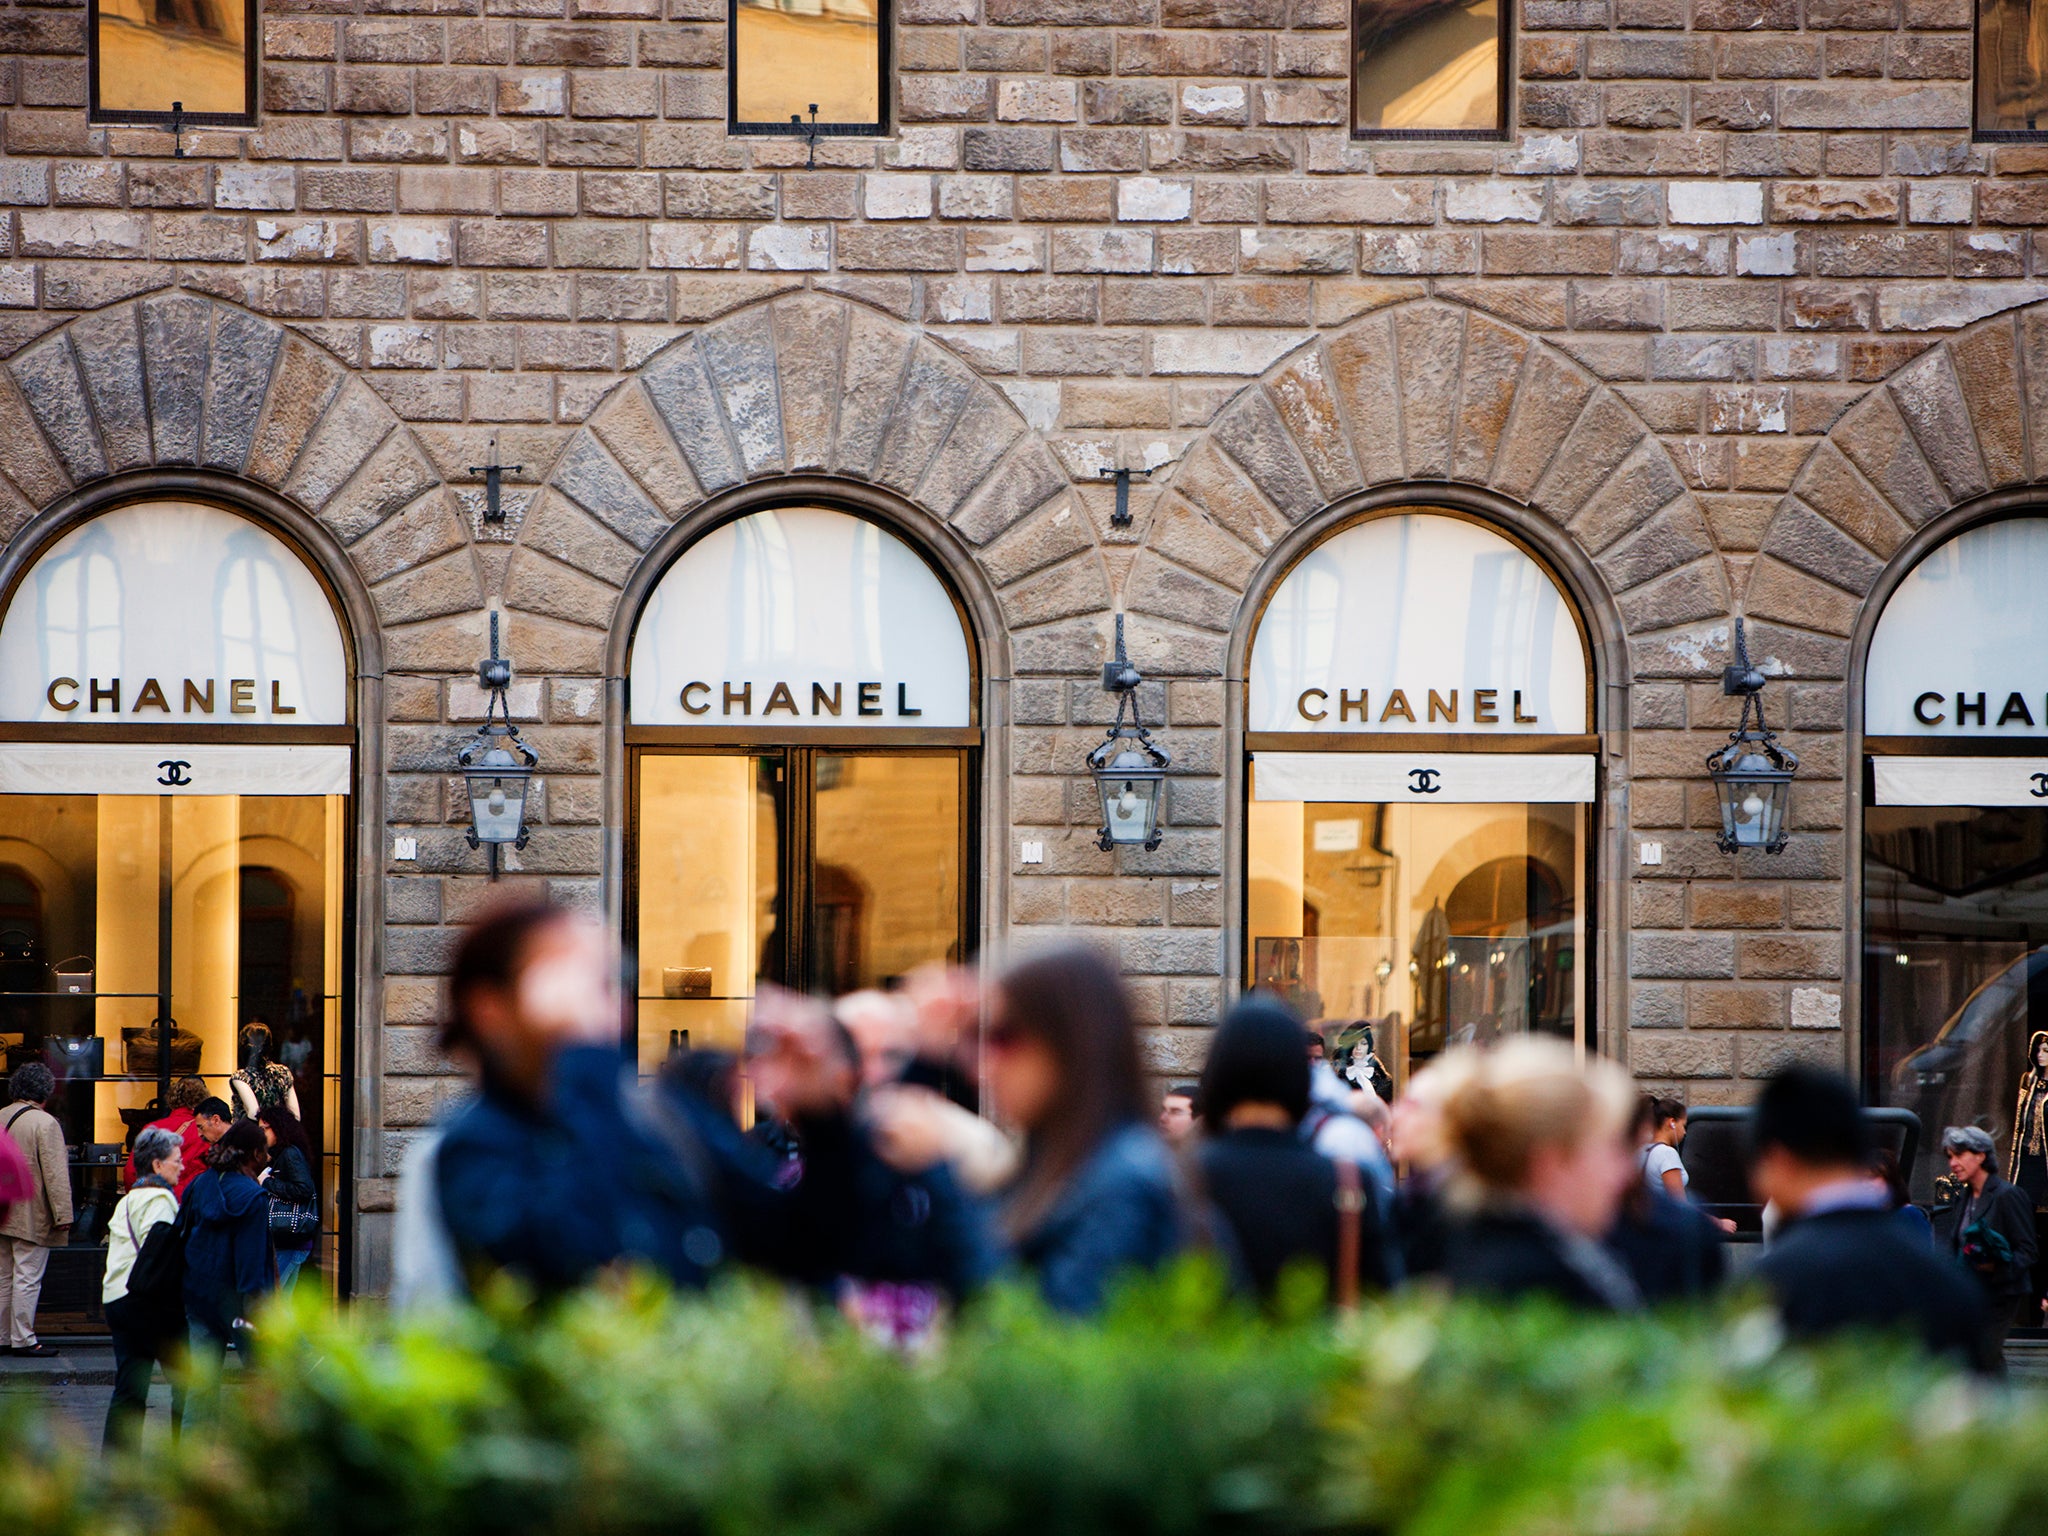 Chanel store in Piazza della Signoria, Florence